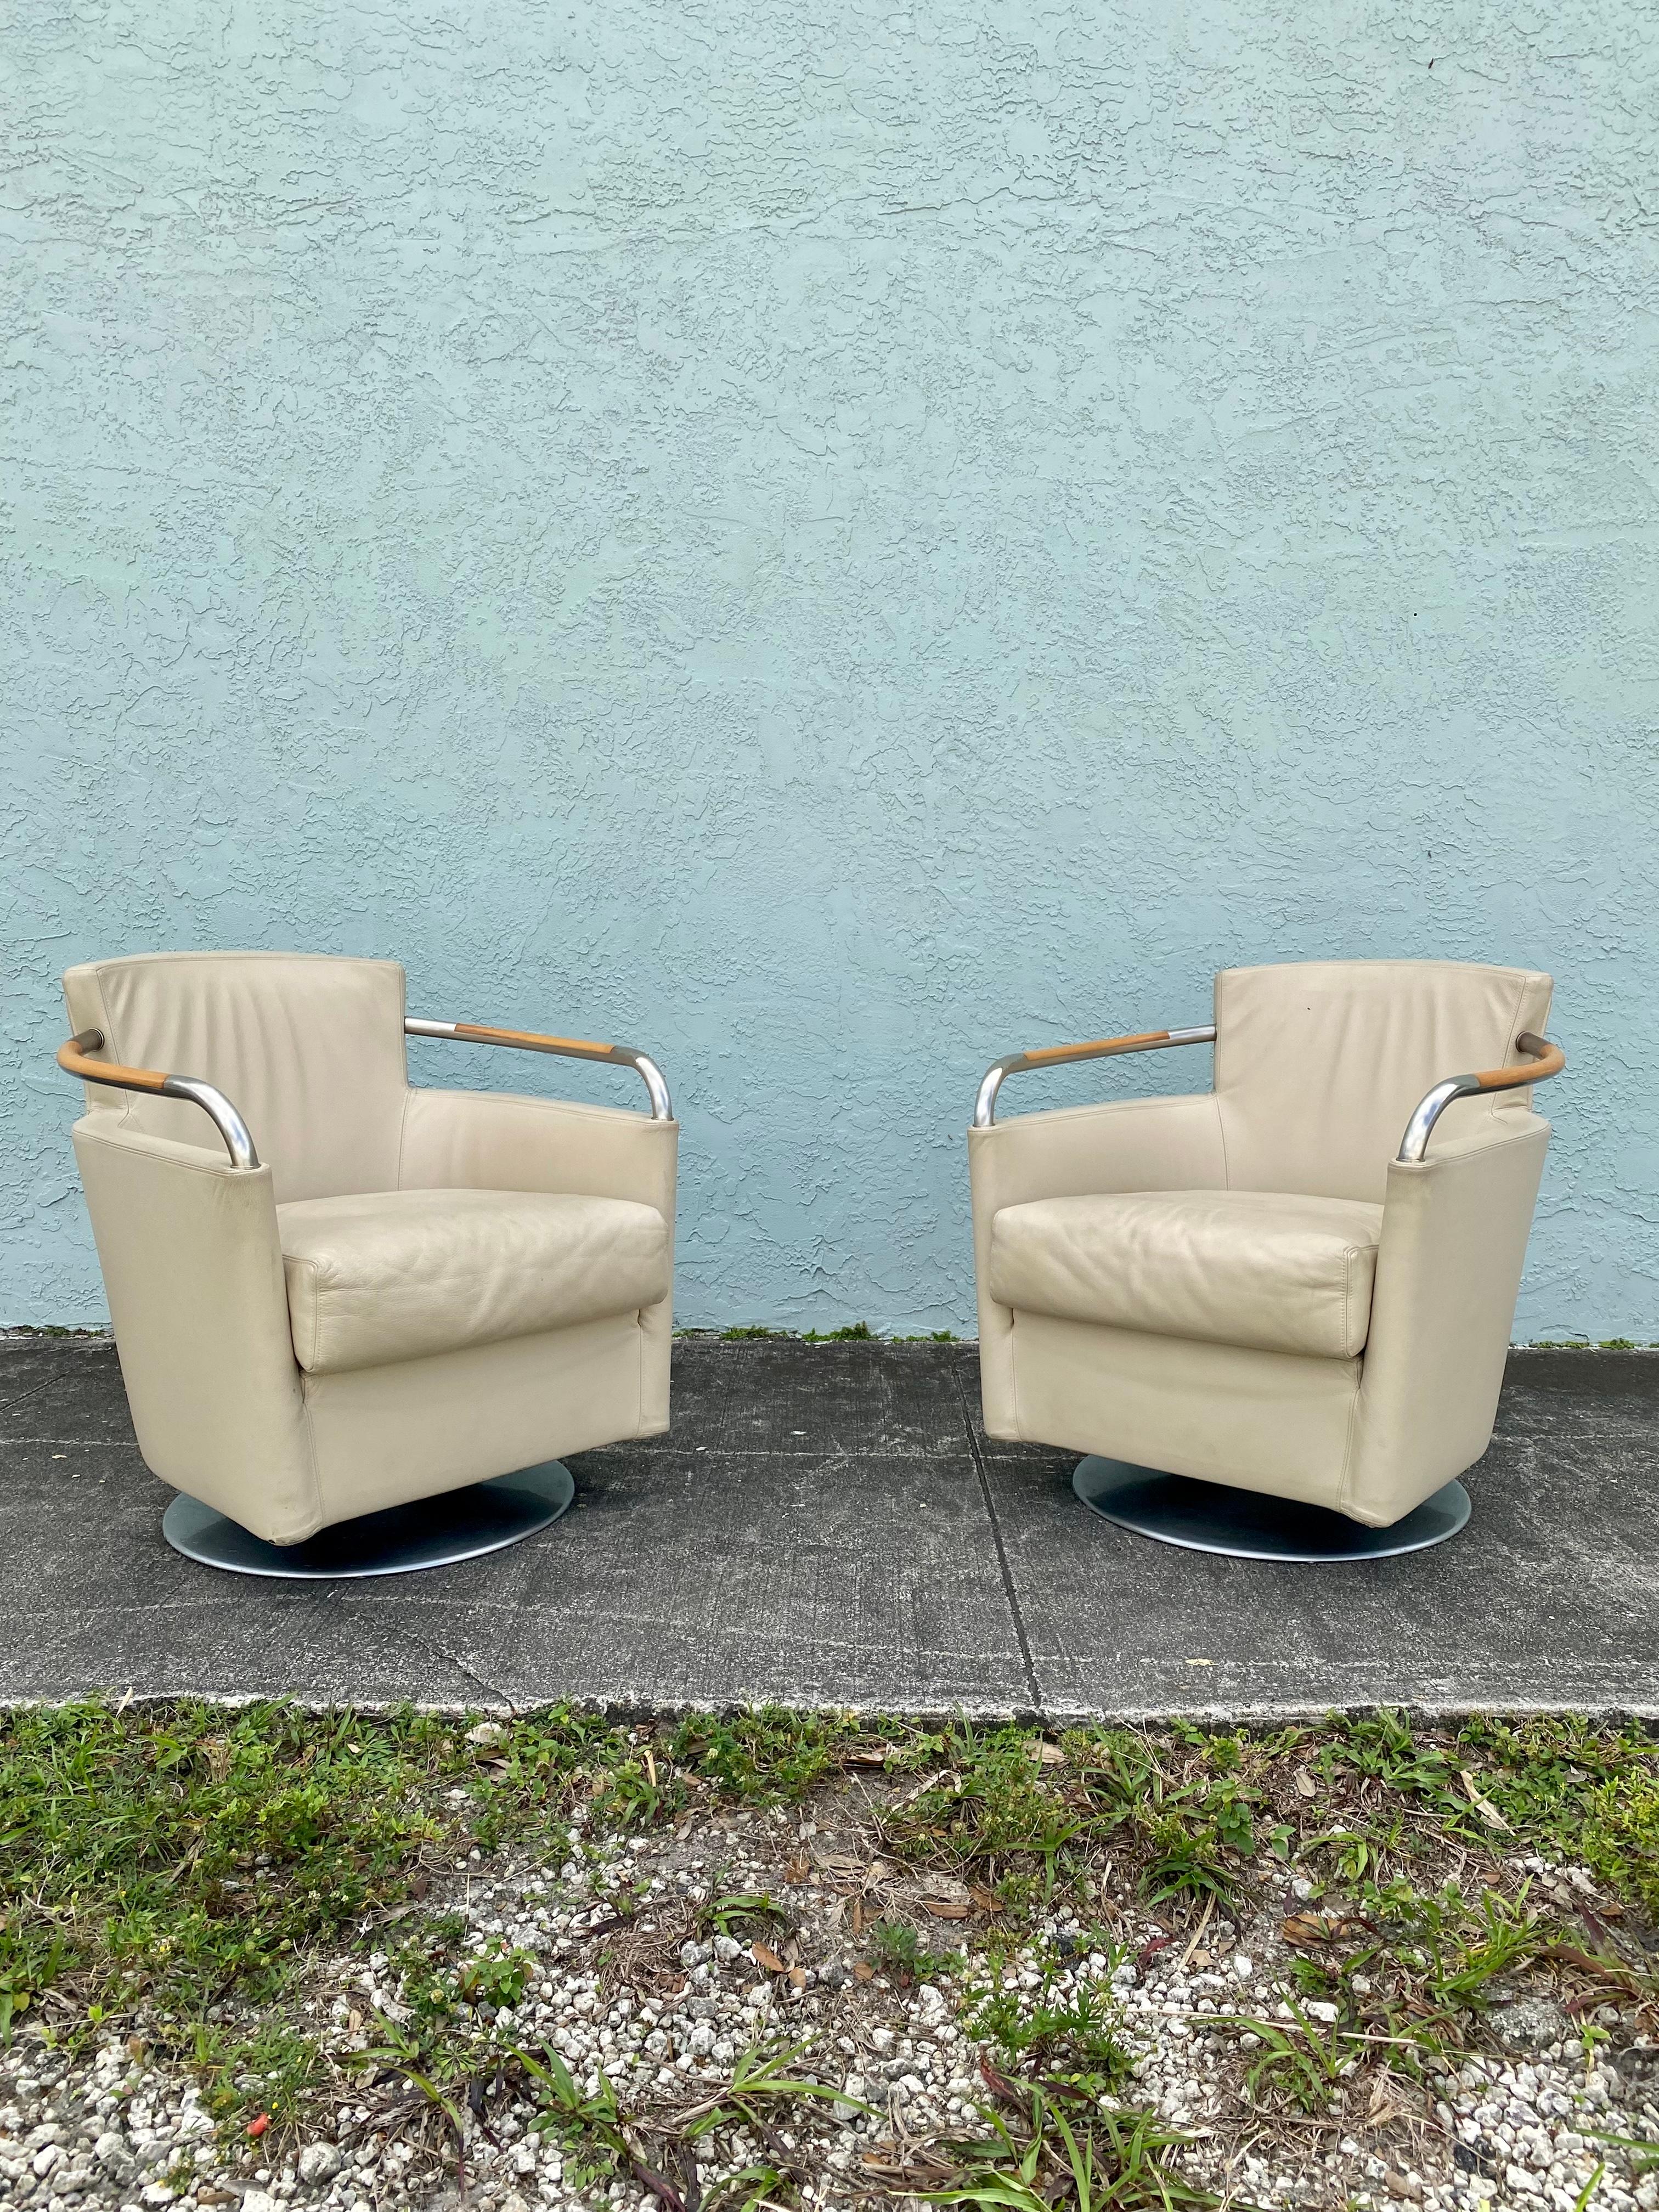 Nous vous proposons ici l'un des plus beaux et des plus rares ensembles de fauteuils en cuir, acier et bois que vous puissiez espérer trouver. Le design est remarquable partout. Ce magnifique ensemble est une pièce d'apparat qui est également